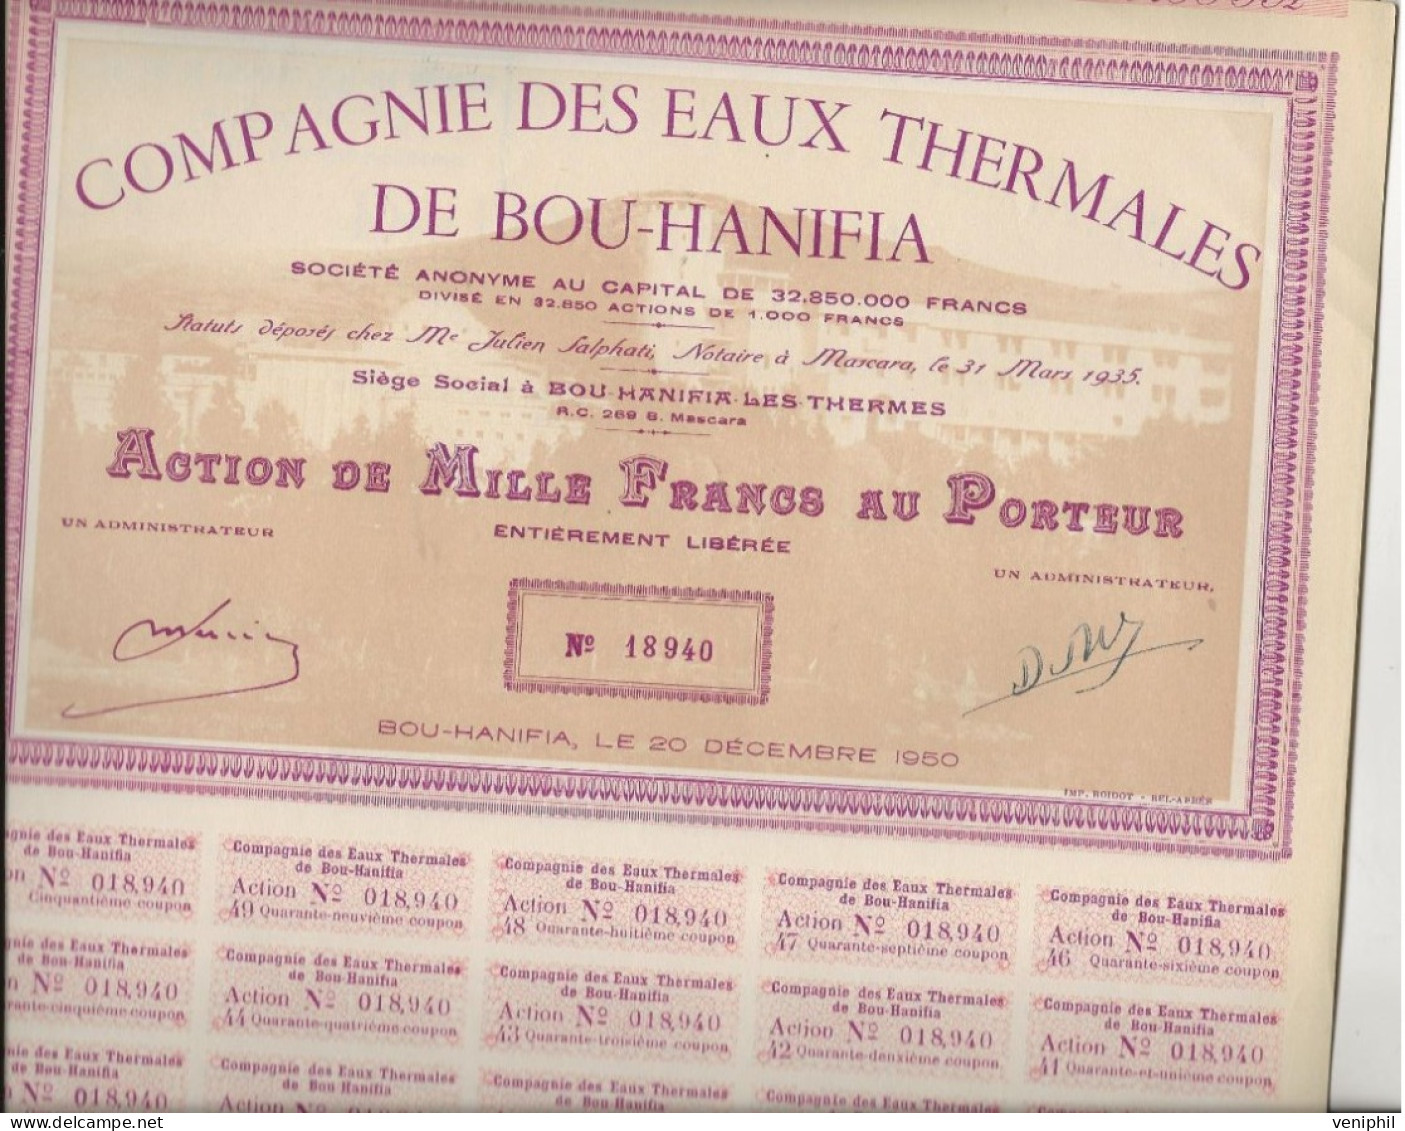 COMPAGNIE DES EAUX THERMALES DE BOU-HANIFIA - LOT DE 10 ACTIONS DE 1000 FRANCS  - ANNEE 1950 - Eau